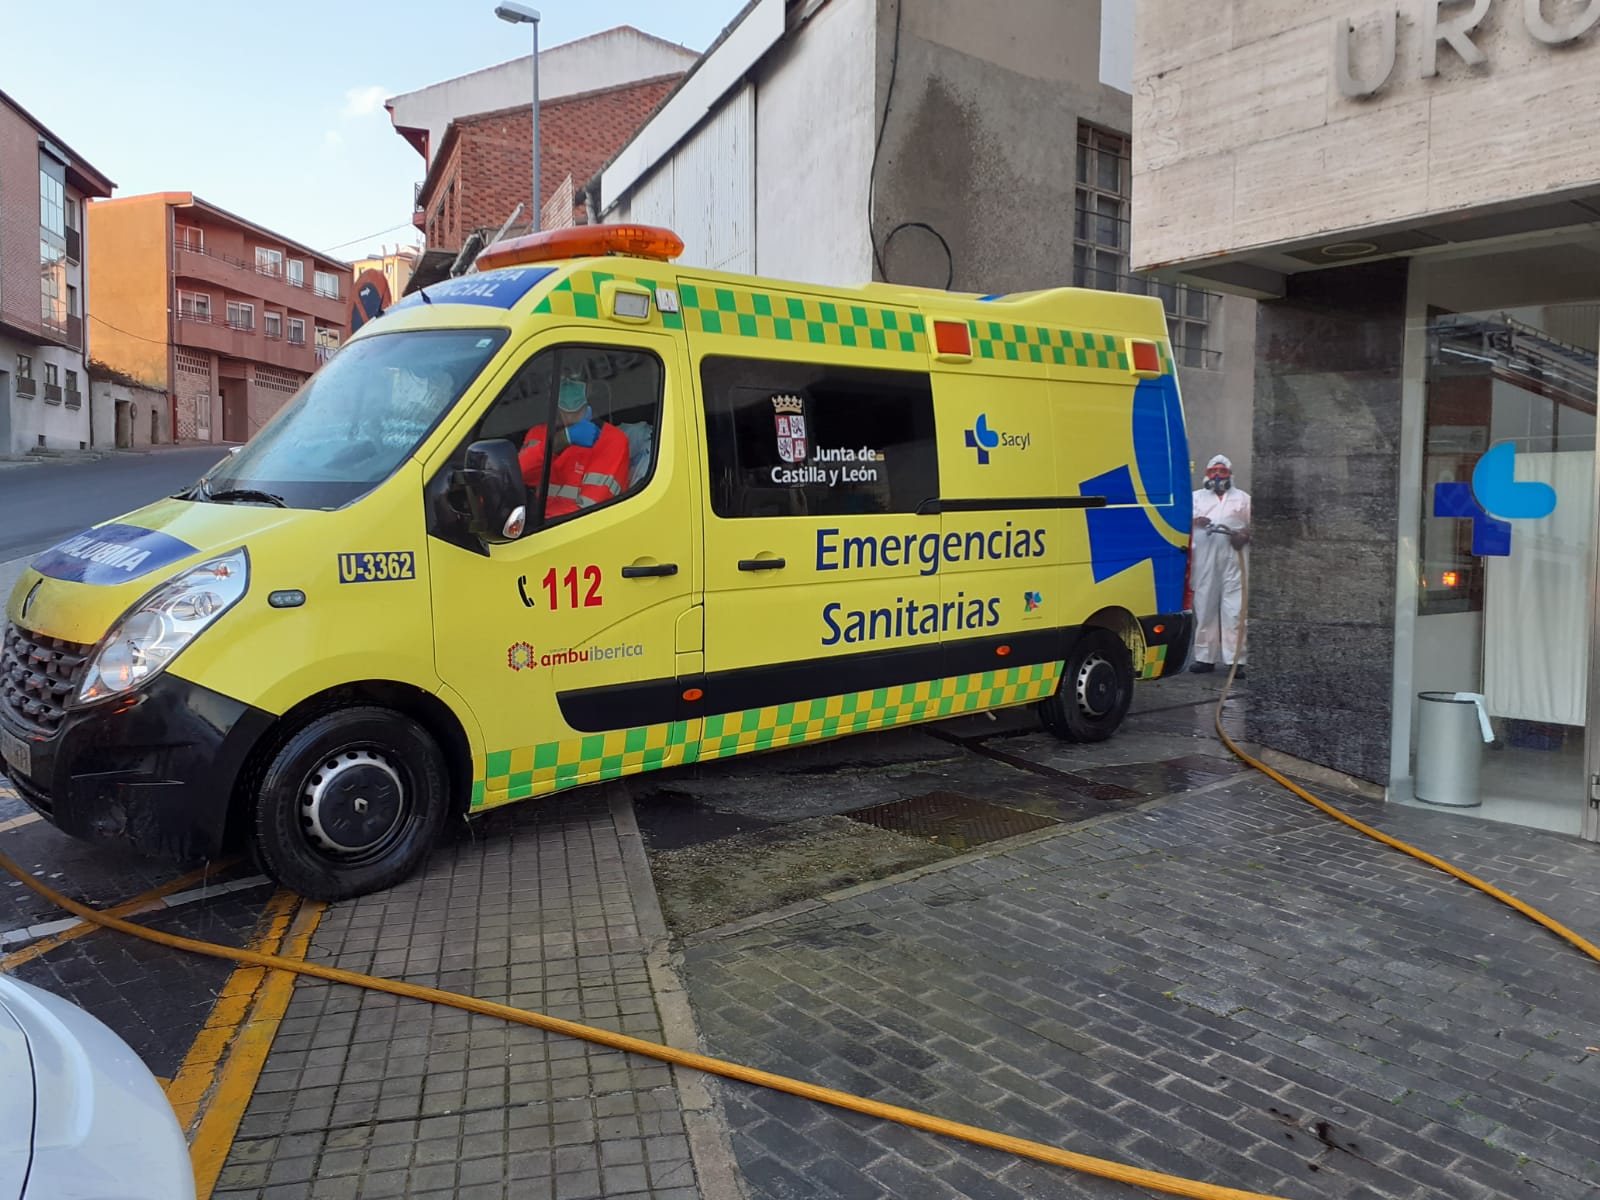 Aprobada una proposición no de ley para dotar a la comarca de Alba de una ambulancia durante 24 horas